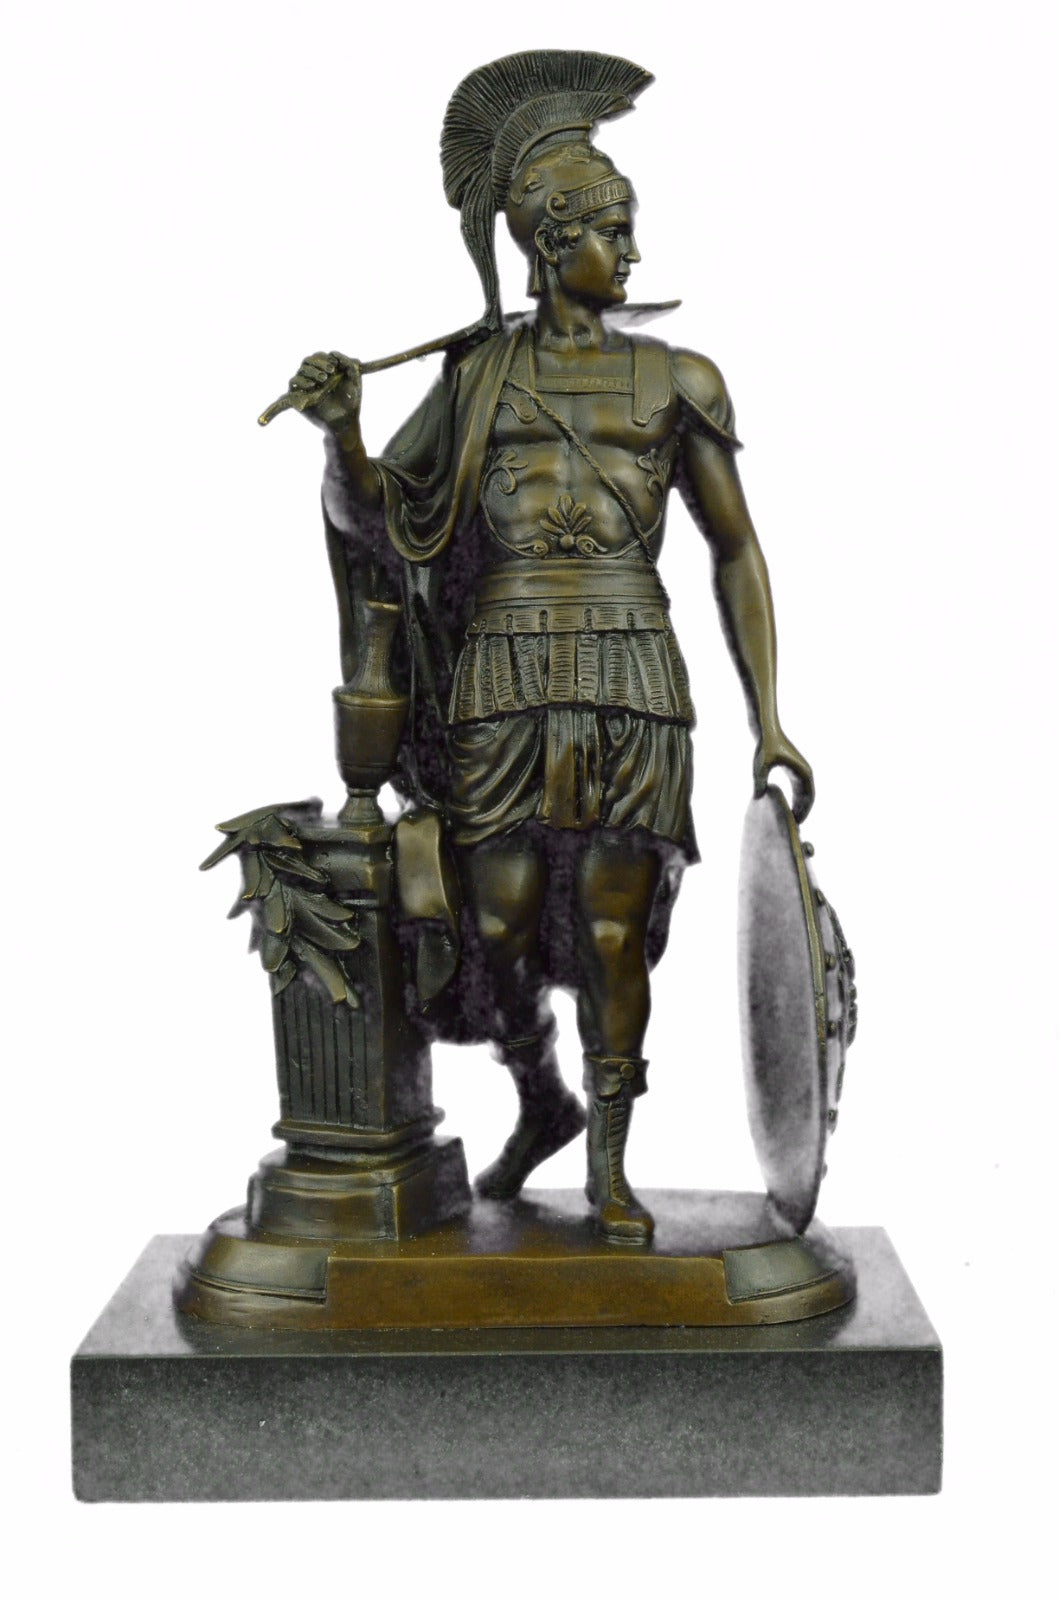 Odysseus Hot Cast Classic Collectible Greek/Roman Famous Soldier by Huzel Figure